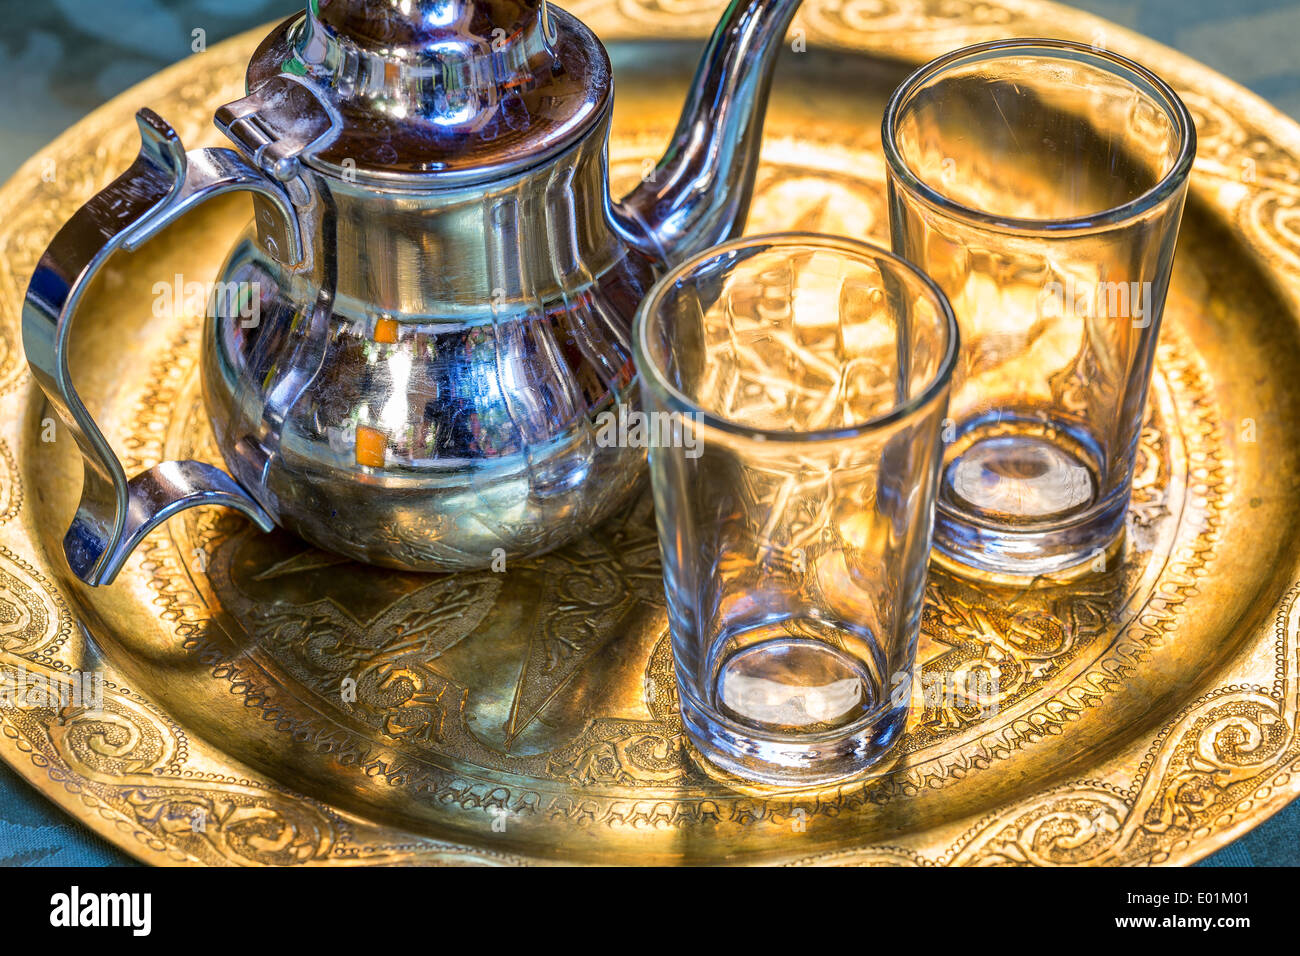 Servir le thé façon marocaine, Merzouga, Maroc, Afrique Banque D'Images